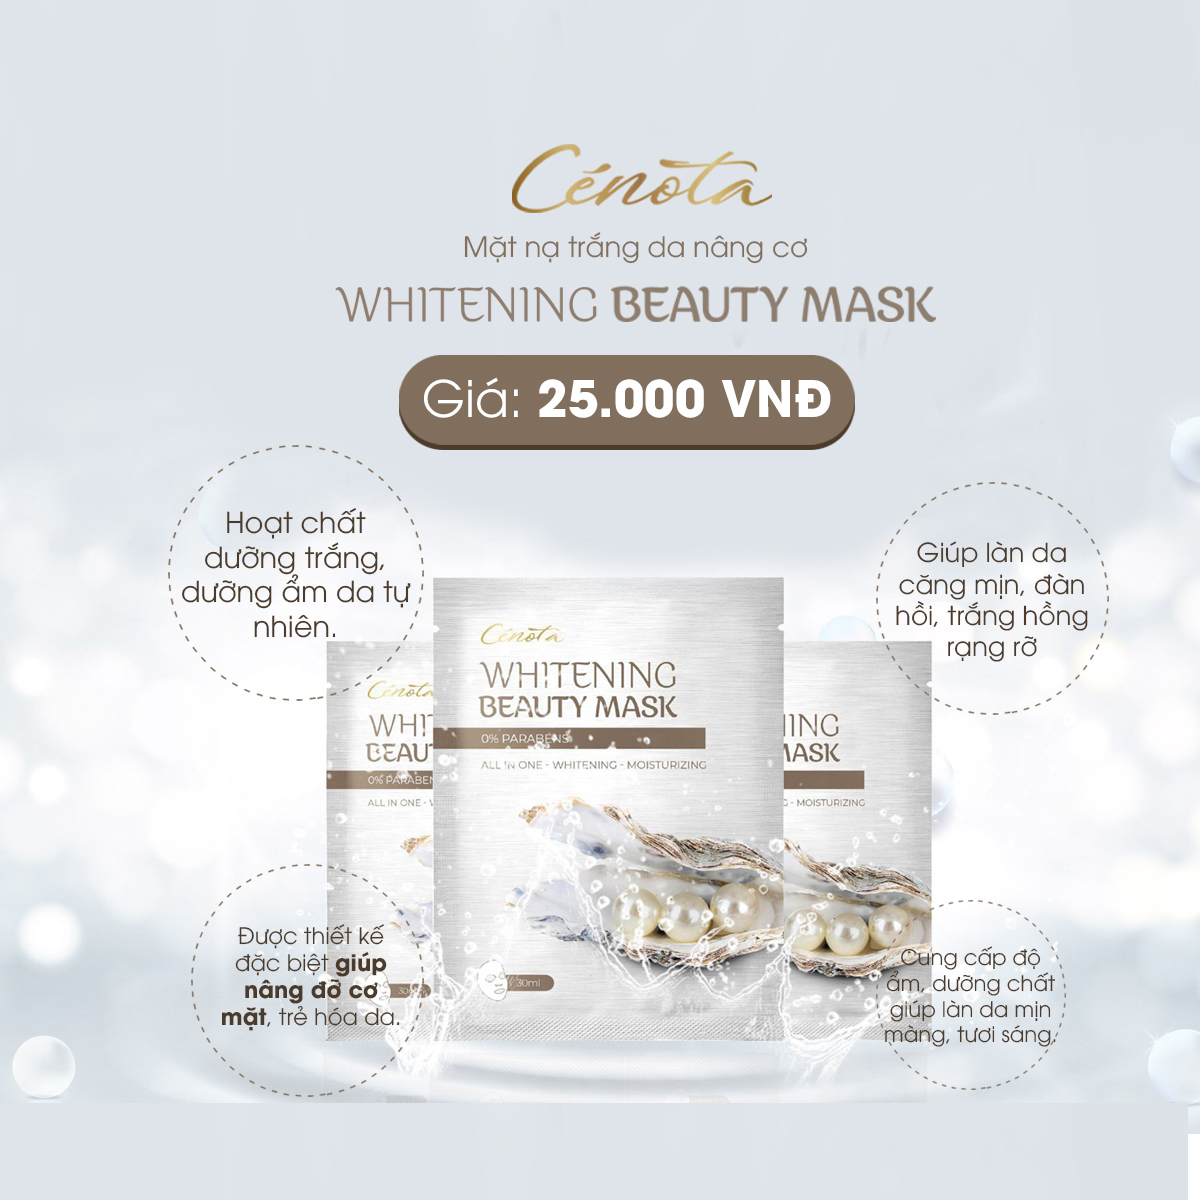 Mặt nạ Cenota Whitening Beauty Mask